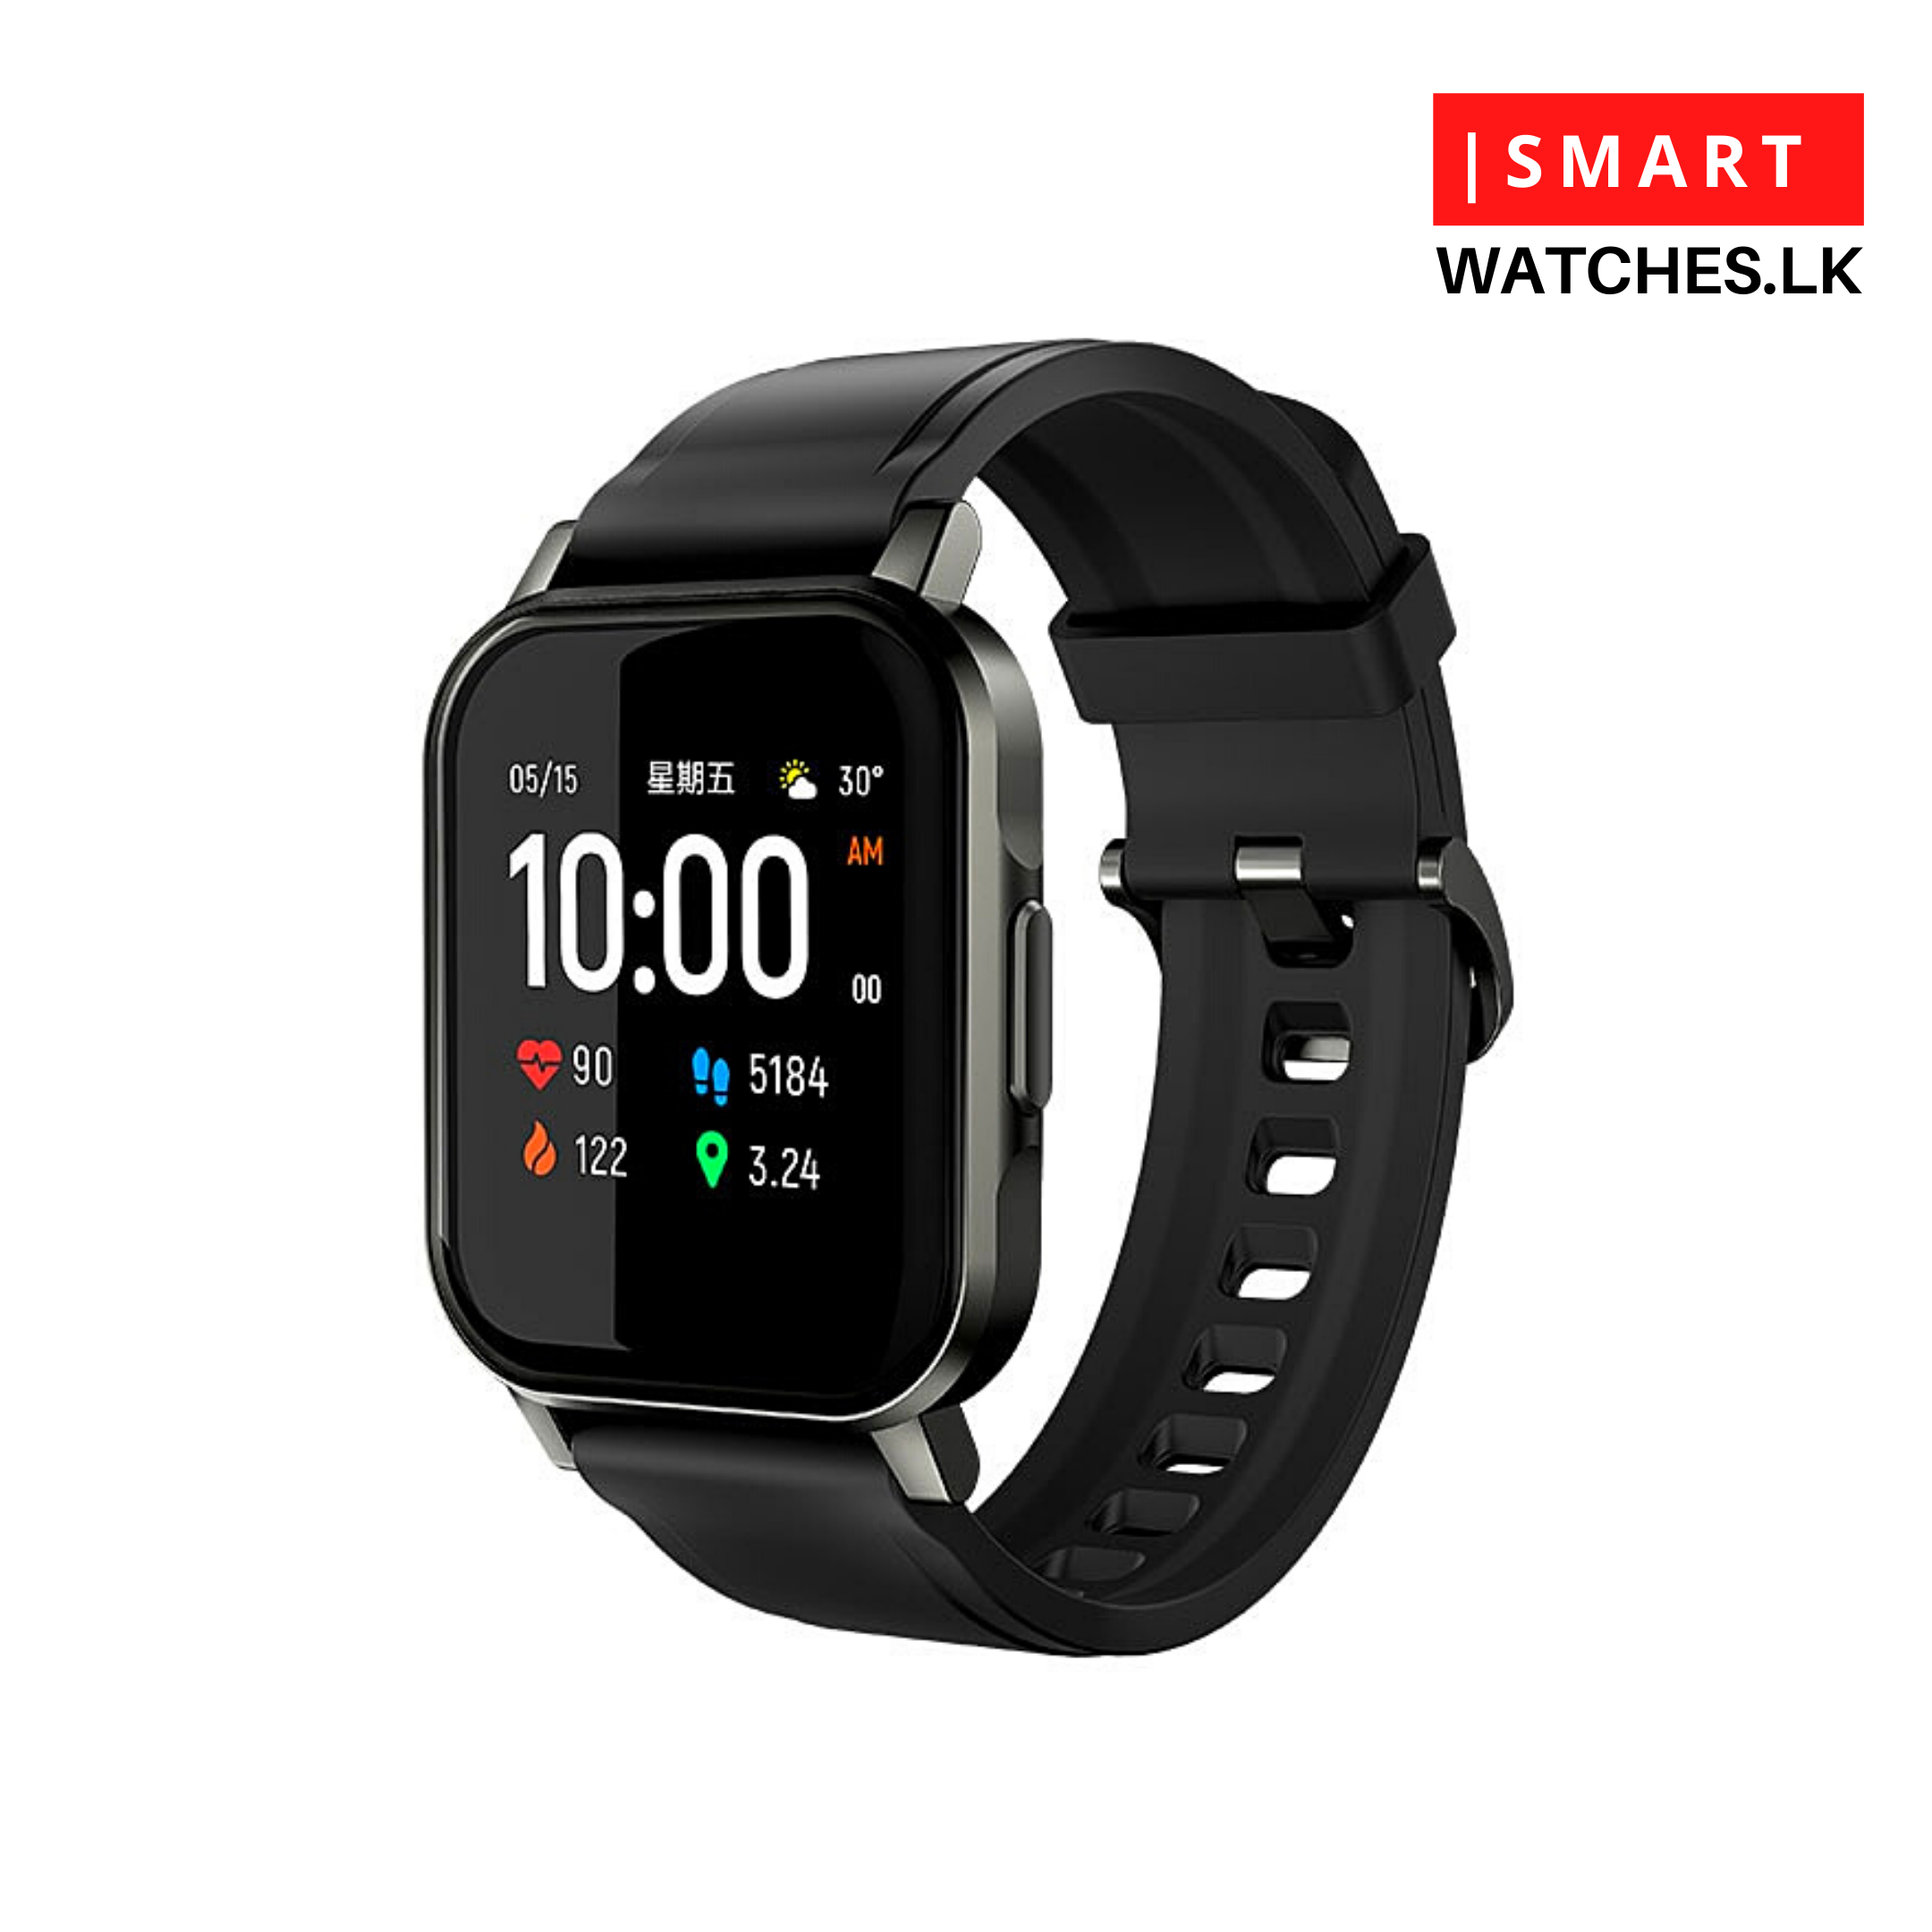 LS02 (Certified) Smart Watch in Sri Lanka | Smartwatches.lk